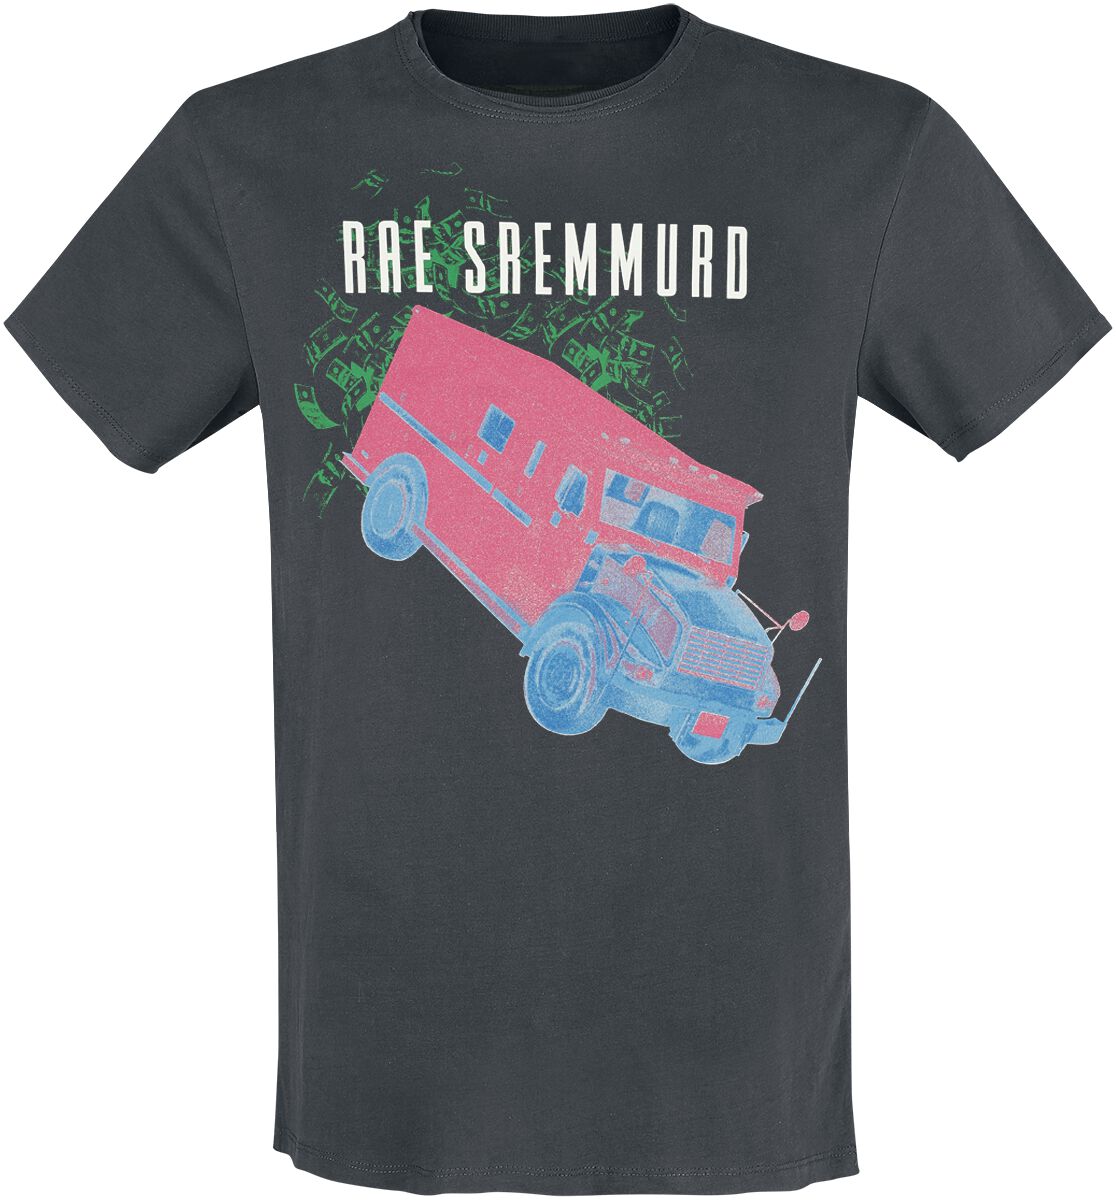 Rae Sremmurd T-Shirt - Amplified Collection - Cash Heist - S bis 3XL - für Männer - Größe XXL - charcoal  - Lizenziertes Merchandise! von Rae Sremmurd